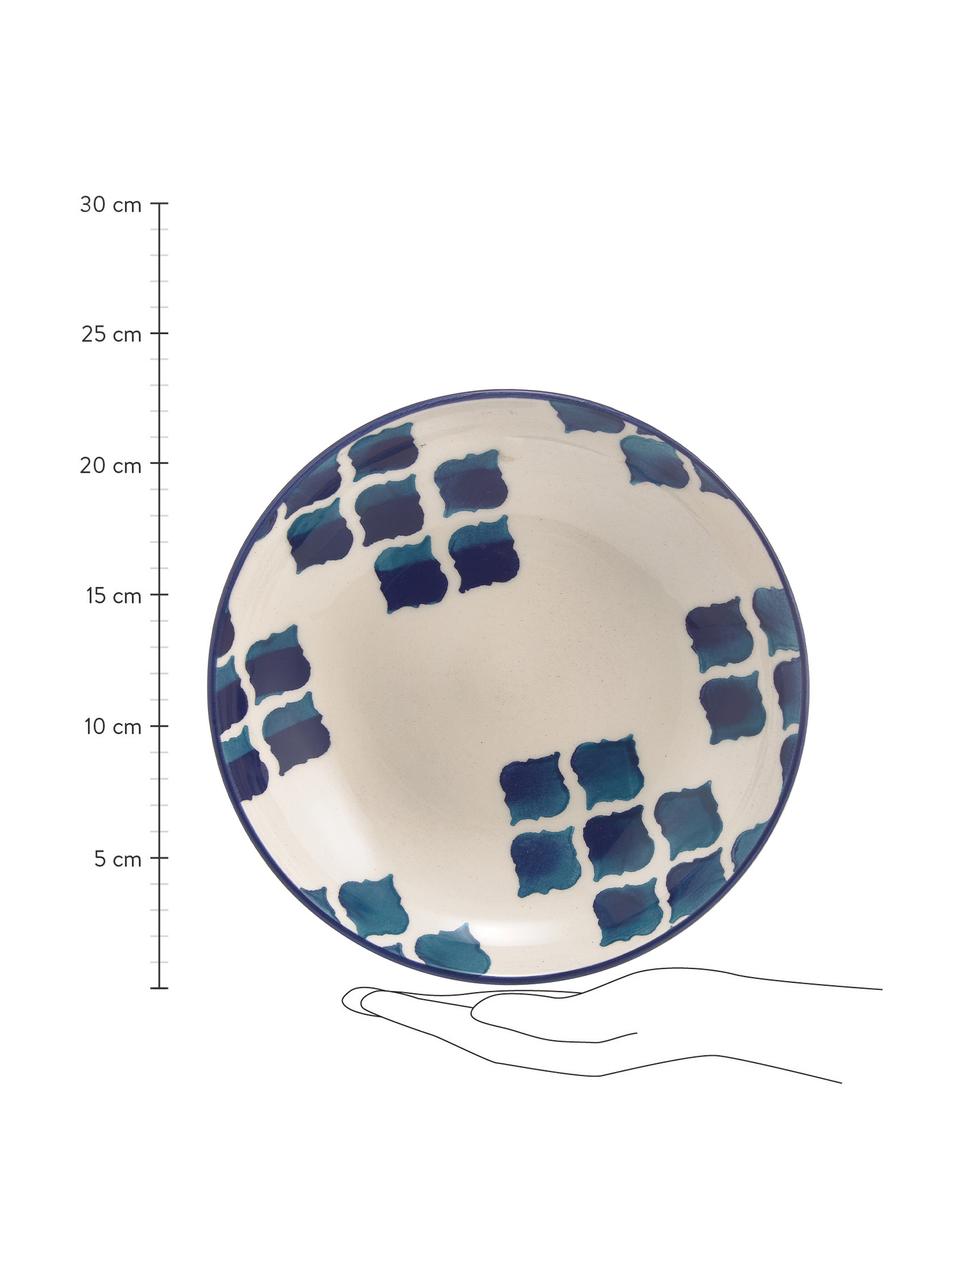 Assiette creuse artisanale céramique Ikat, 6 pièces, Céramique, Blanc, bleu, Ø 23 cm